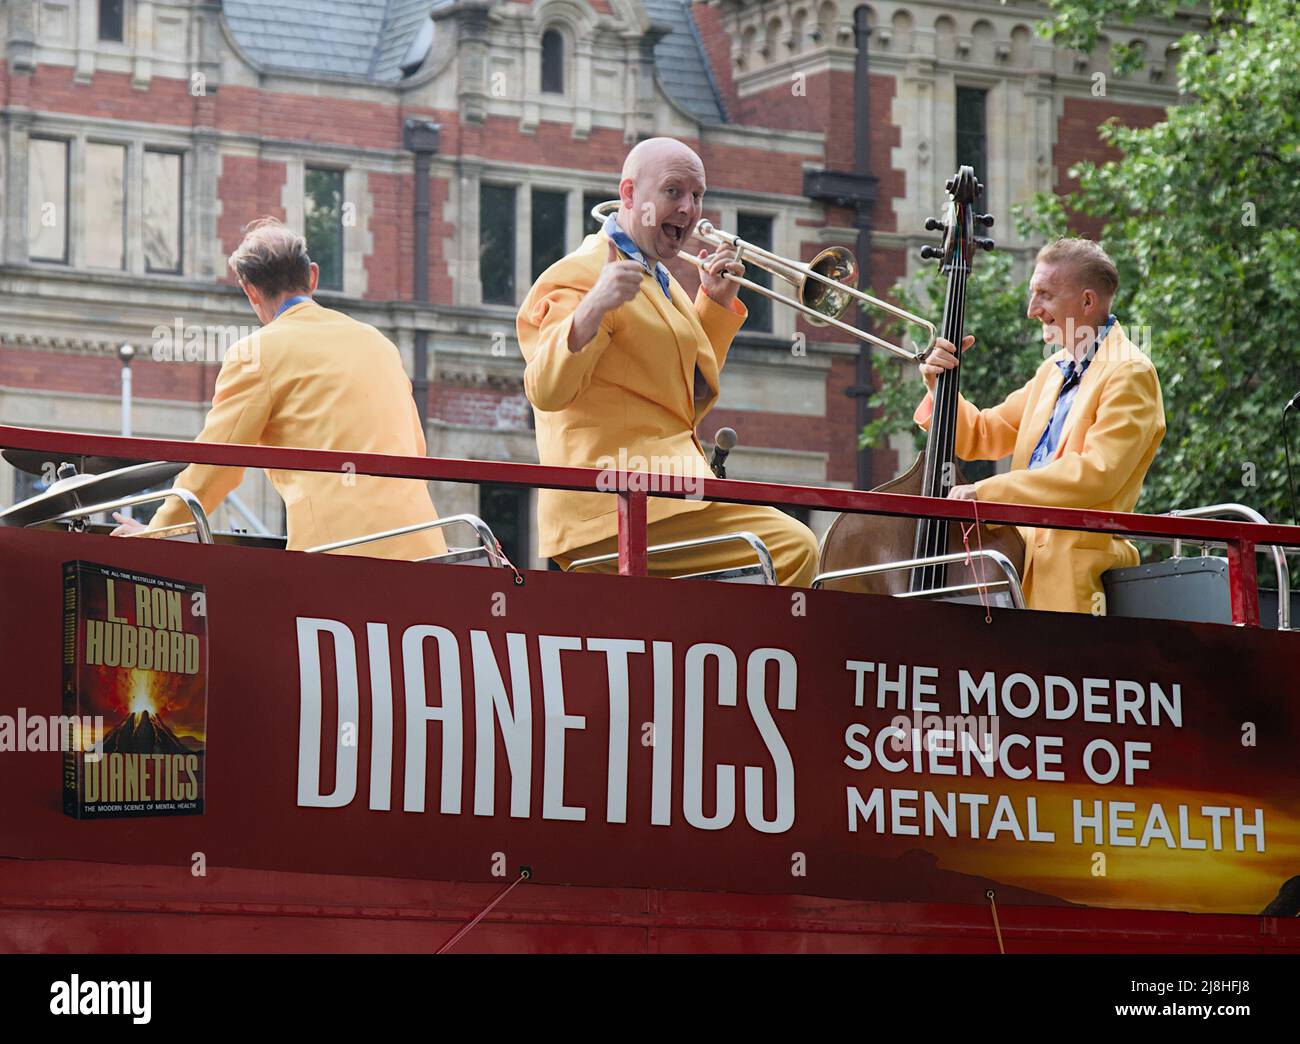 Membre D'Un Jazz Swing Band donner Un Thumbs sur le dessus d'un Open Top Red London bus Publicité Dianetics Mental Health créé par L. Ron Hubbard Banque D'Images